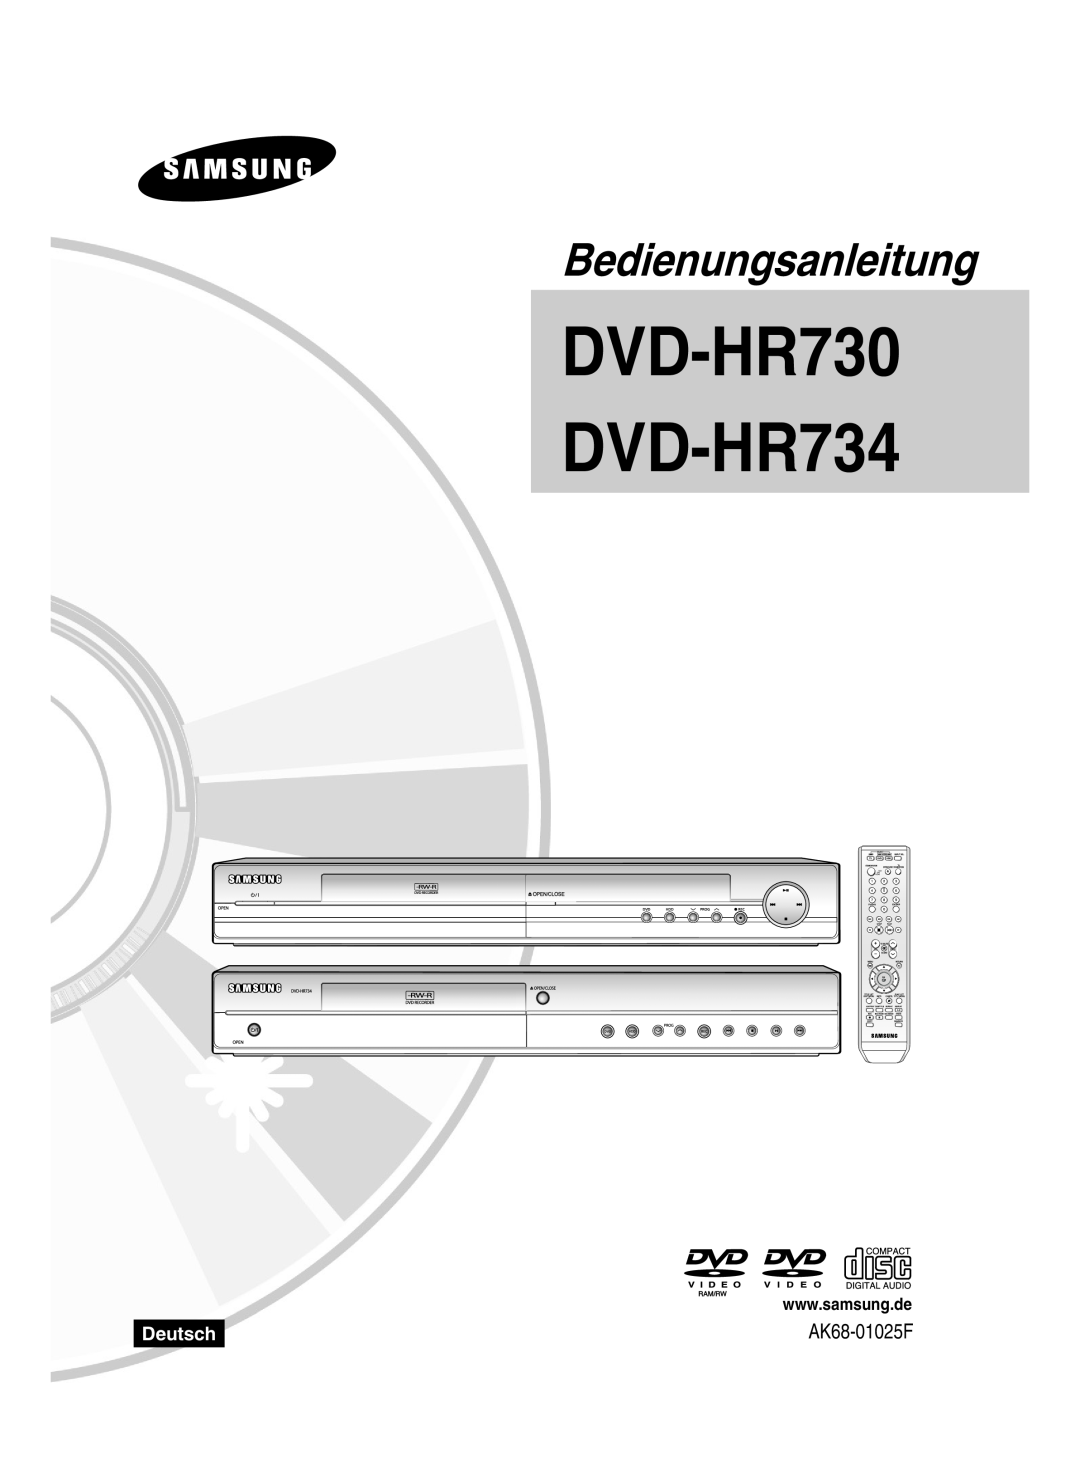 Samsung DVD-HR730/XEB, DVD-HR730/XEC, DVD-HR734/XEG, DVD-HR730/XEG manual Deutsch, DVD-HR730 DVD-HR734, Bedienungsanleitung 